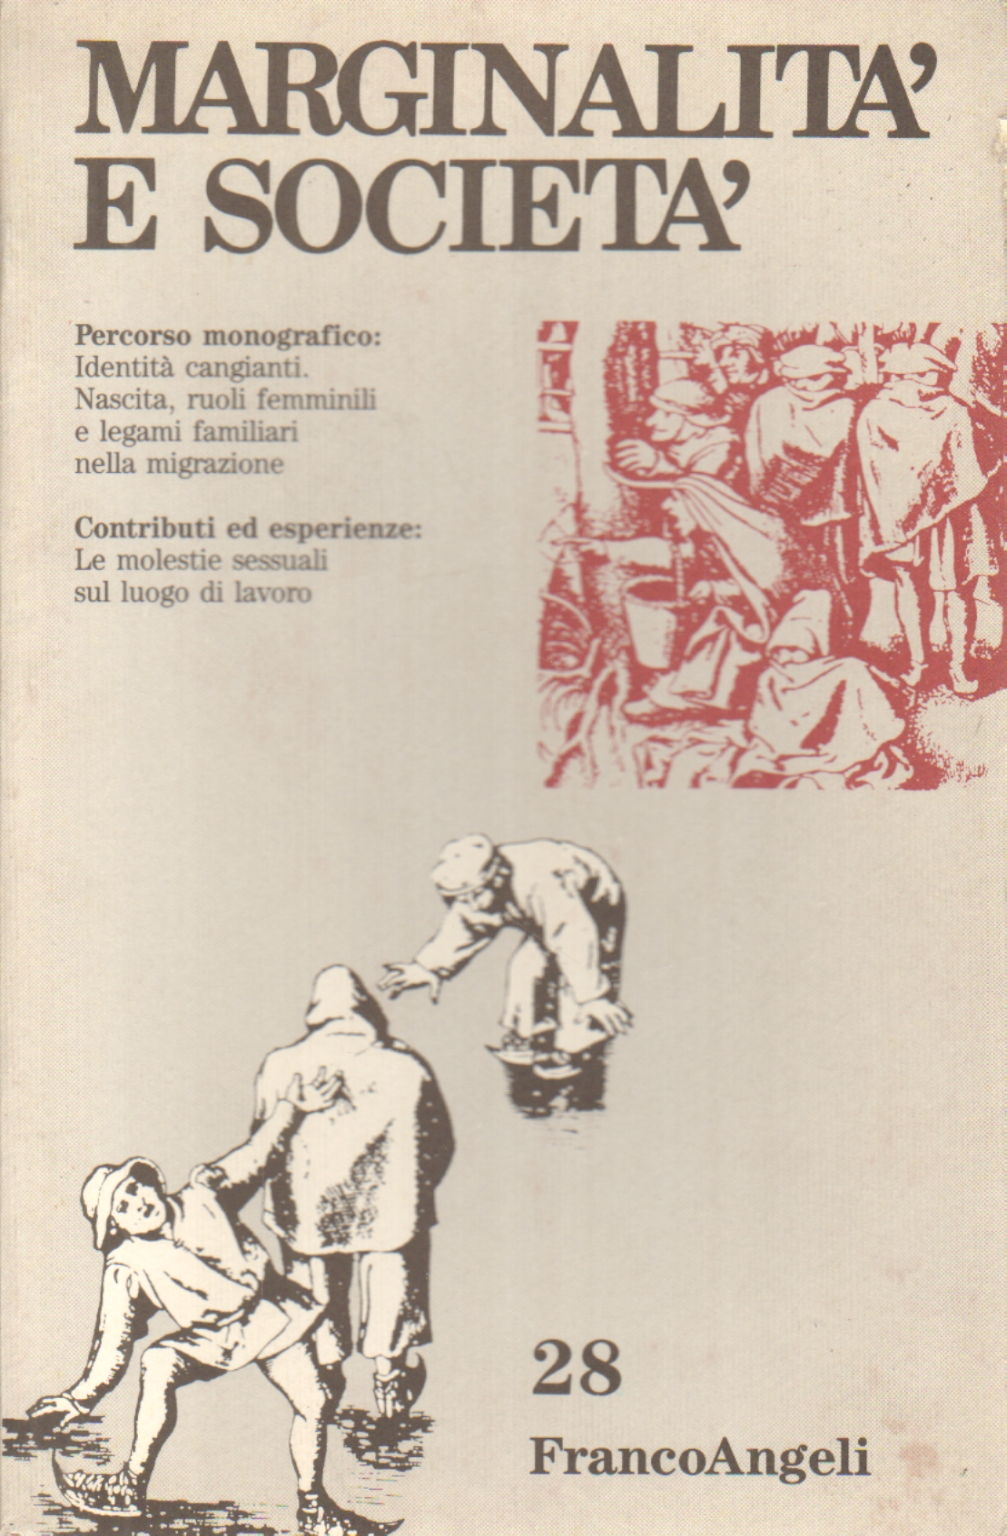 Marginality and society n. 28 1994, AA.VV.